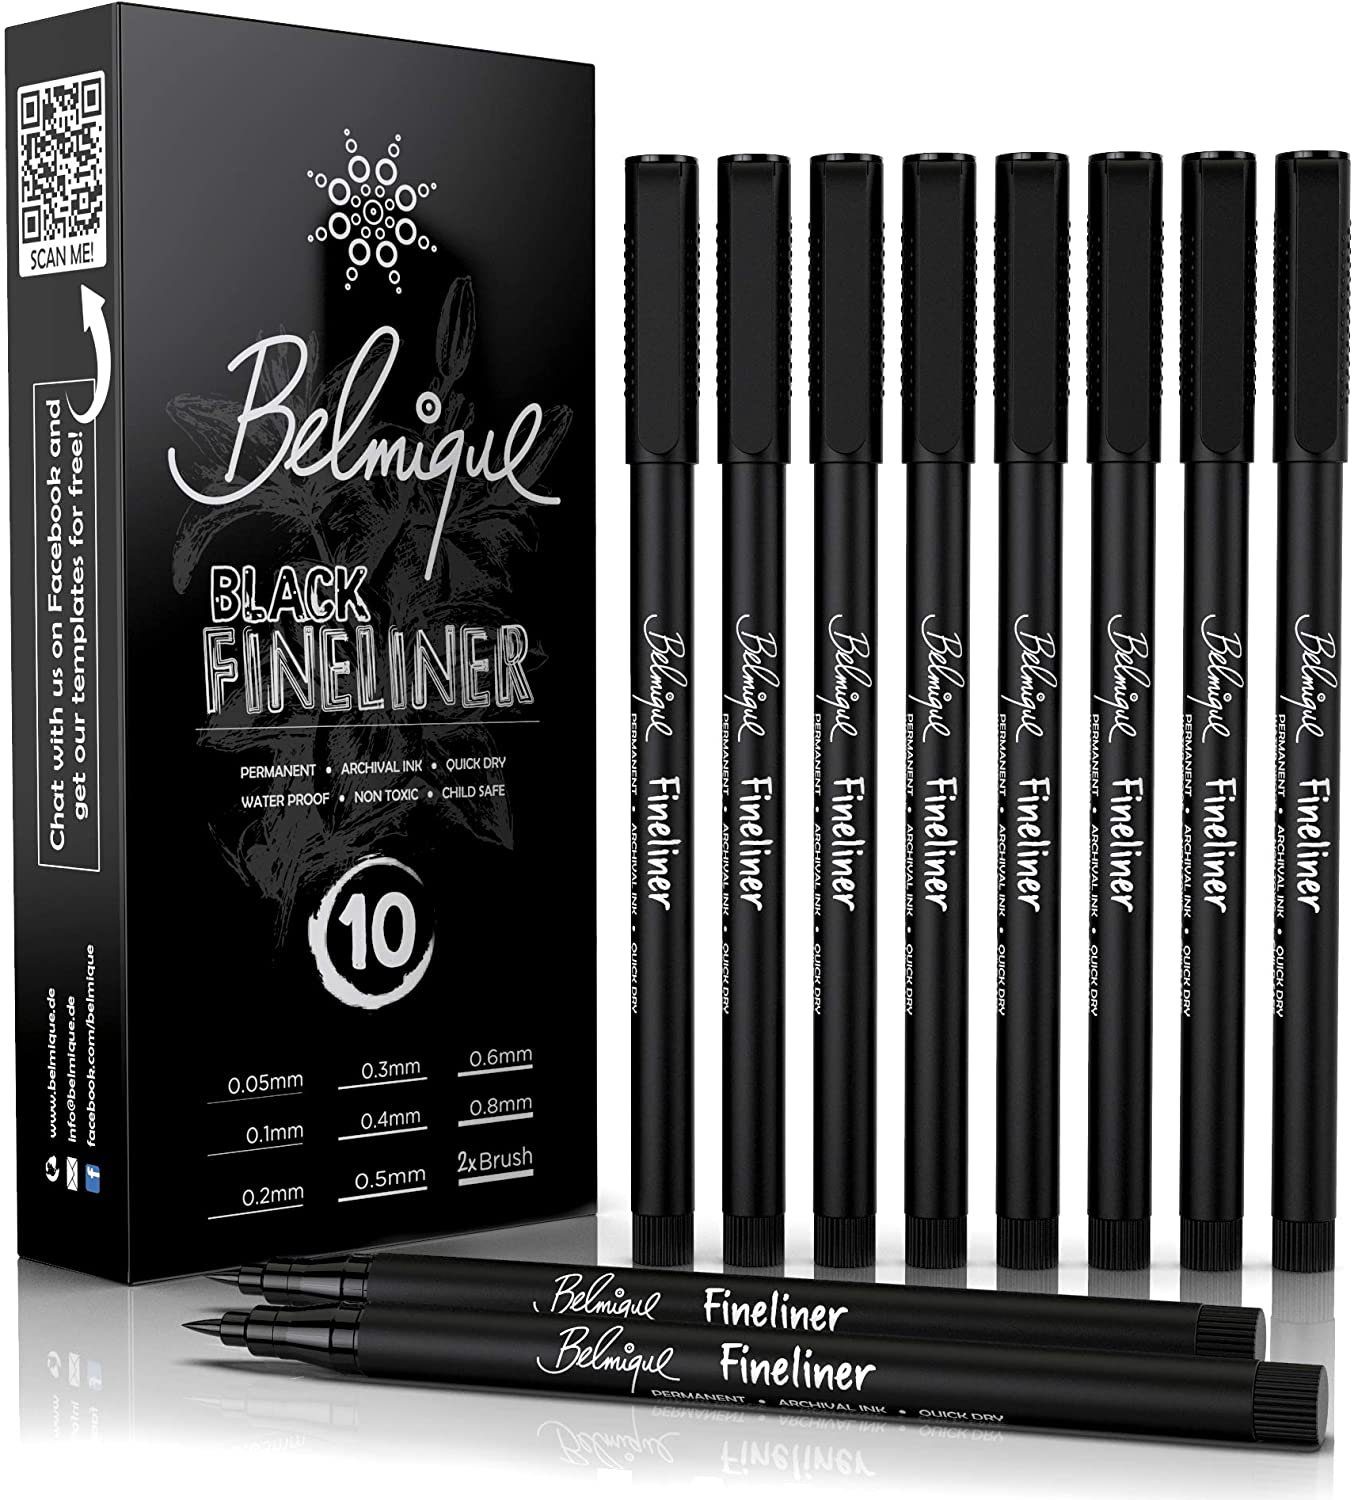 Belmique Fineliner, 10 Stück inkl. 2x Brushpens als Set, Blackliner 0,05 mm bis 0,8 mm in Schwarz. Wasserfest schnelltrocknend deckend und hochpigmentiert für Skizze, Bullet Journal